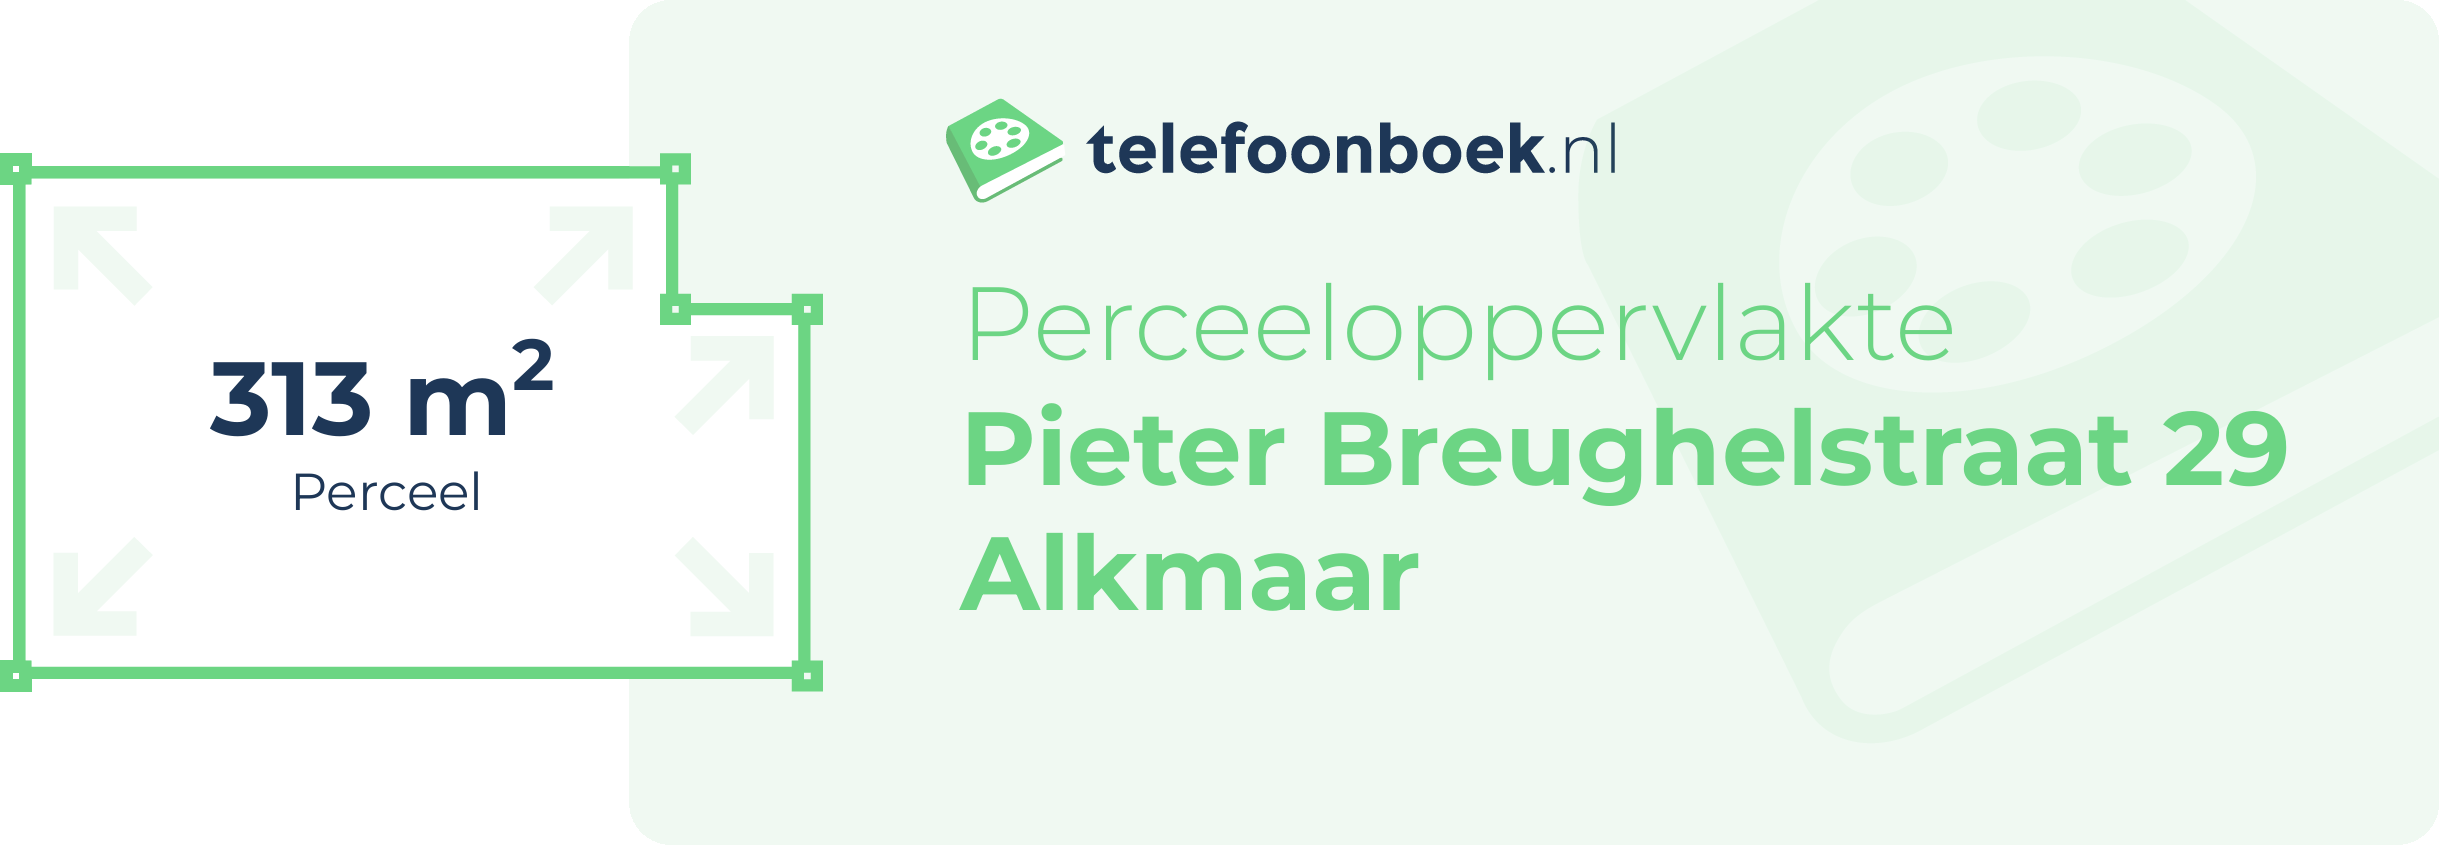 Perceeloppervlakte Pieter Breughelstraat 29 Alkmaar